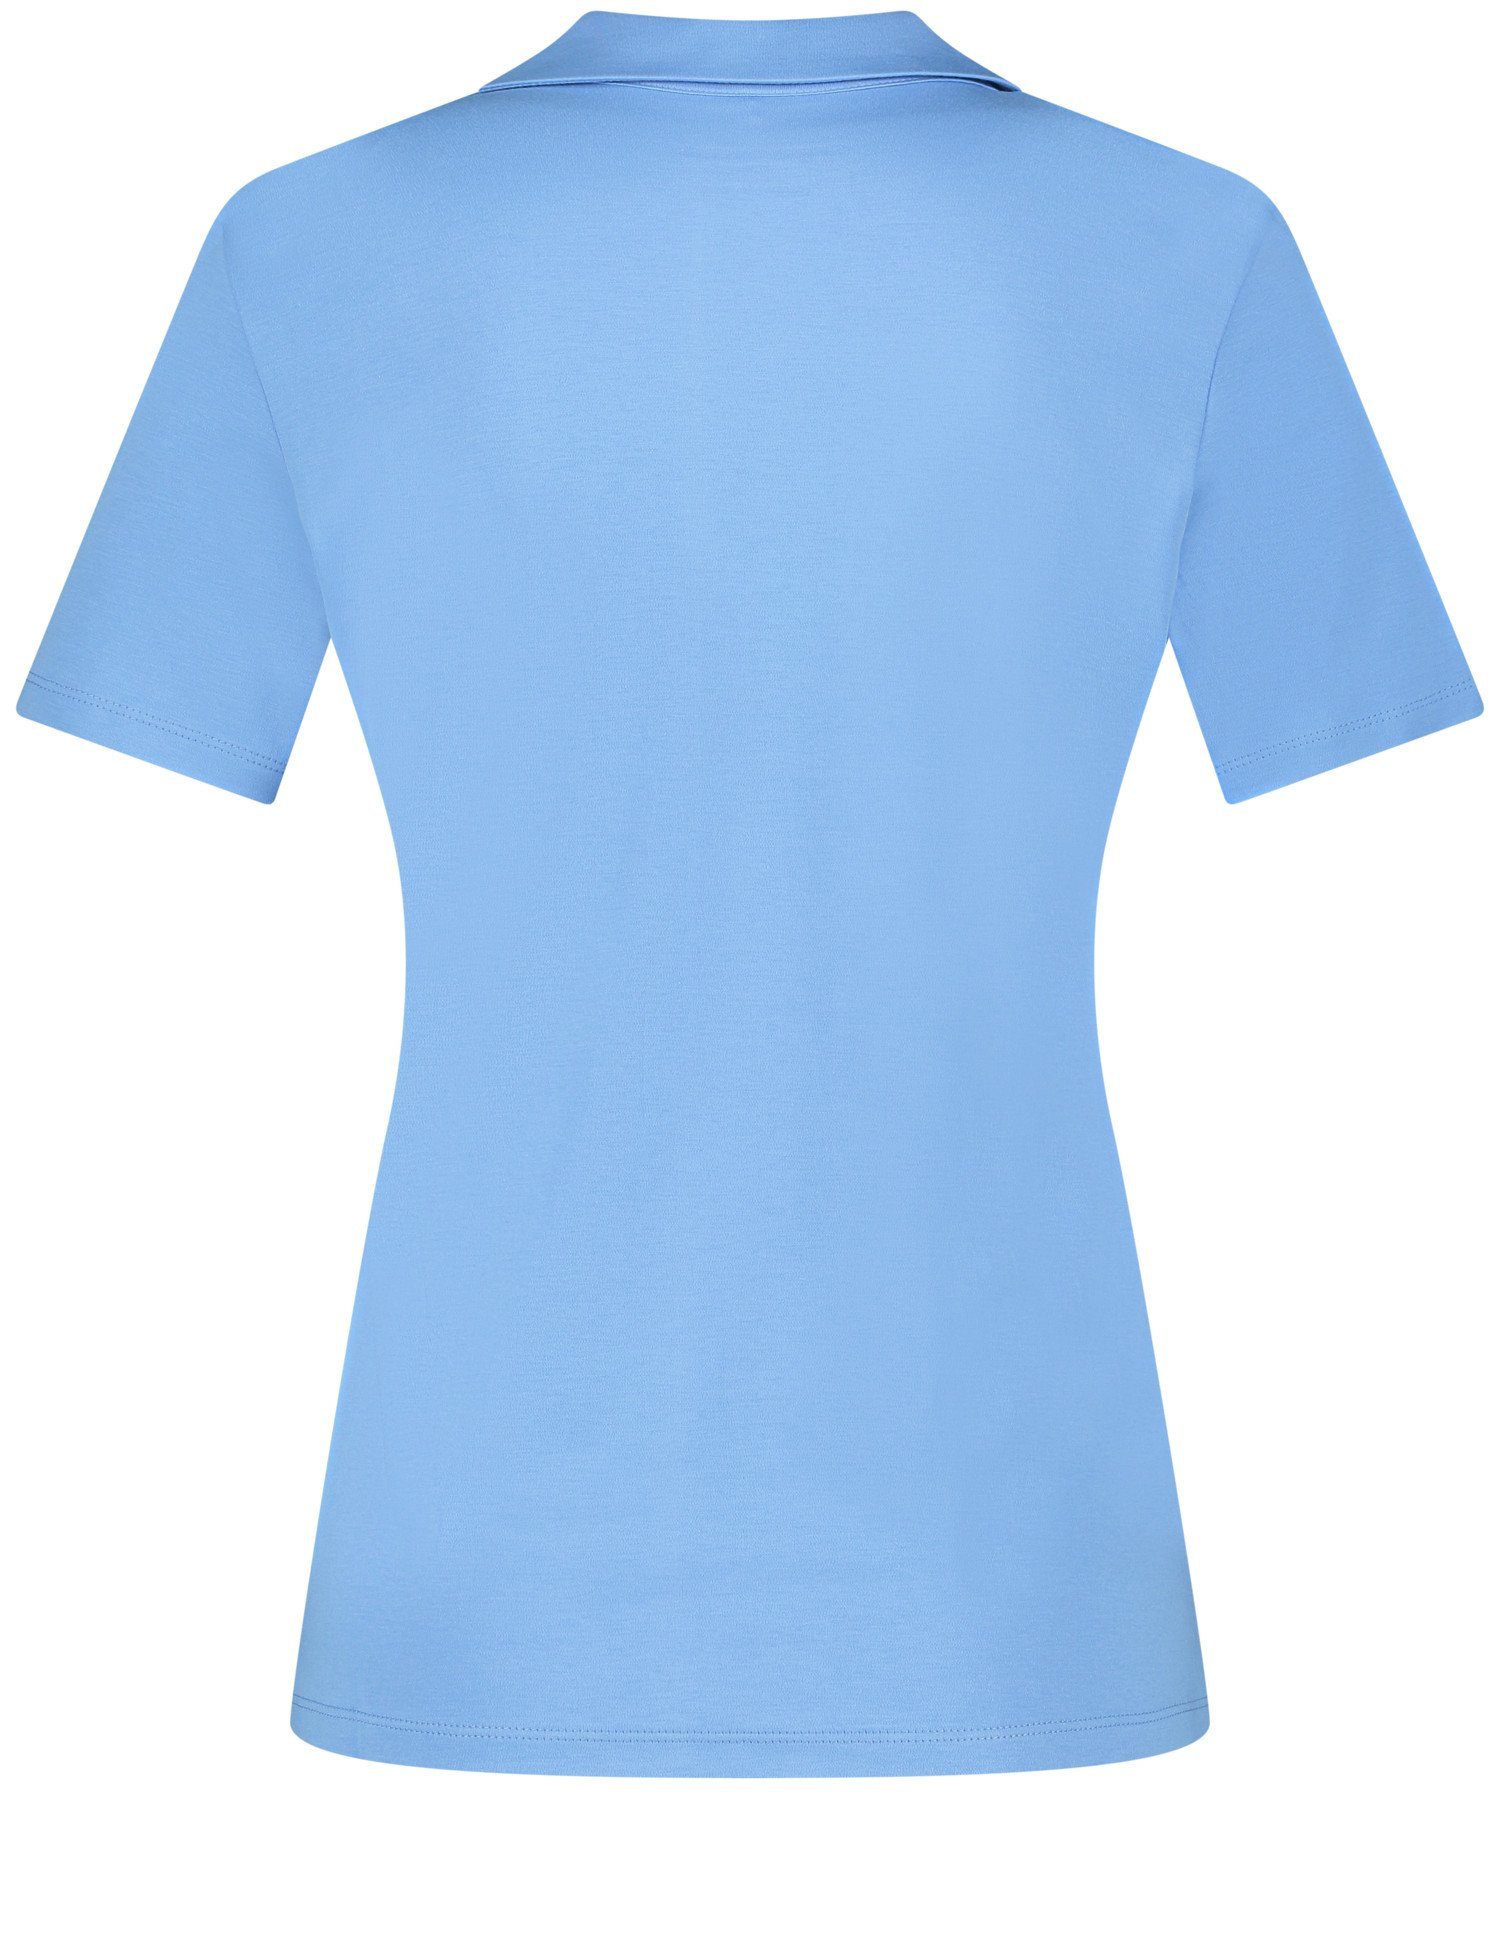 Poloshirt Kurzarm Blue Bright Poloshirt WEBER GERRY